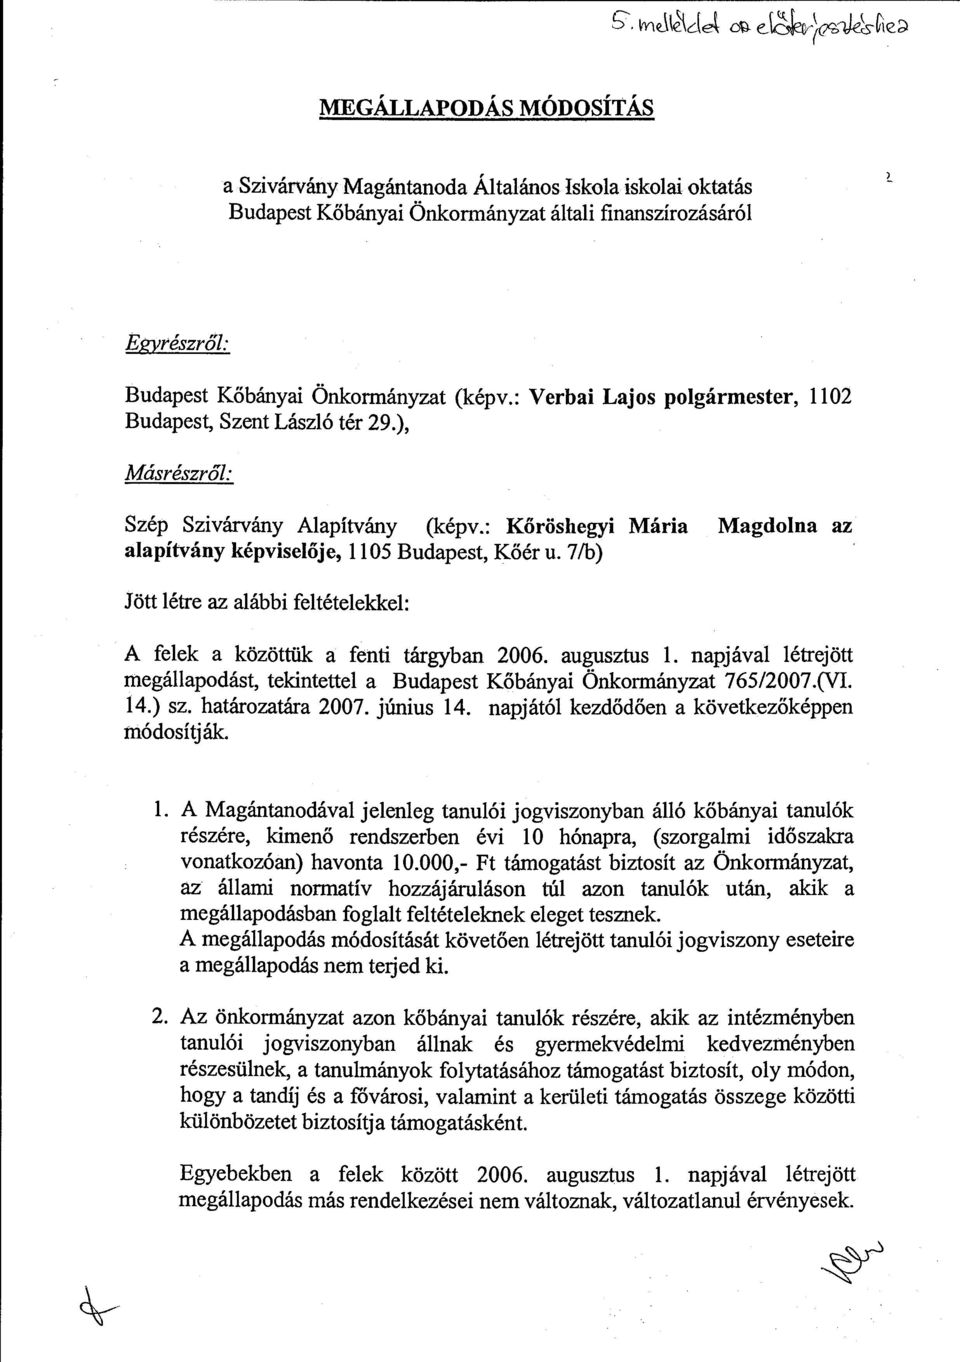 7/b) Jött létre az alábbi feltételekkel: A felek a közöttük a fenti tárgyban 2006. augusztus l. napjával létrejött megállapodást, tekintettel a Budapest Kőbányai Önkormányzat 765/2007.(VI. 14.) sz.